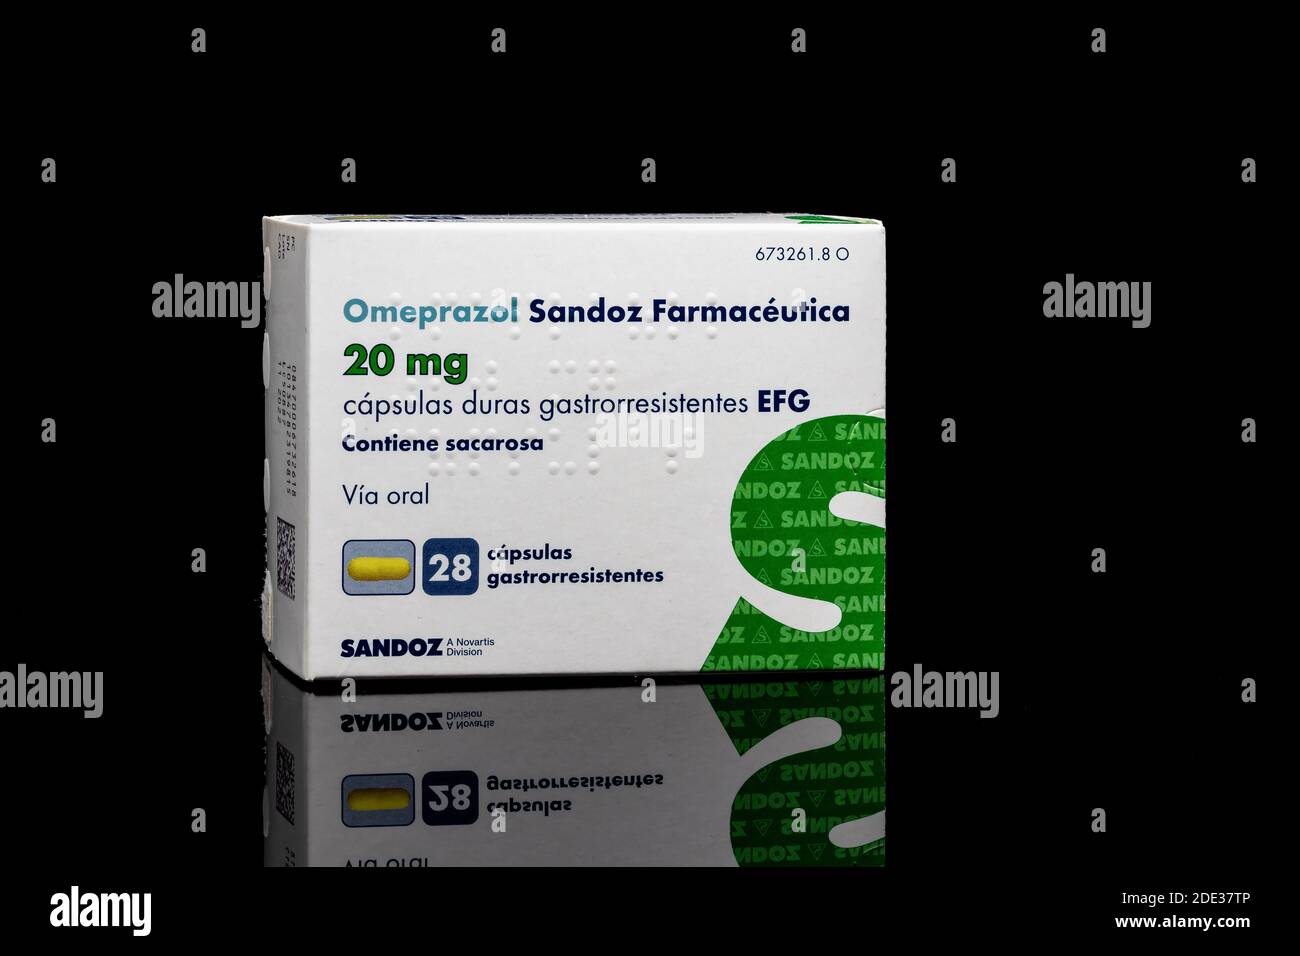 Huelva, Spagna - 26 novembre 2020: Scatola spagnola del marchio Omeprazole Sandoz. Omeprazolo è usato per trattare alcuni problemi di stomaco e esofago (come Foto Stock